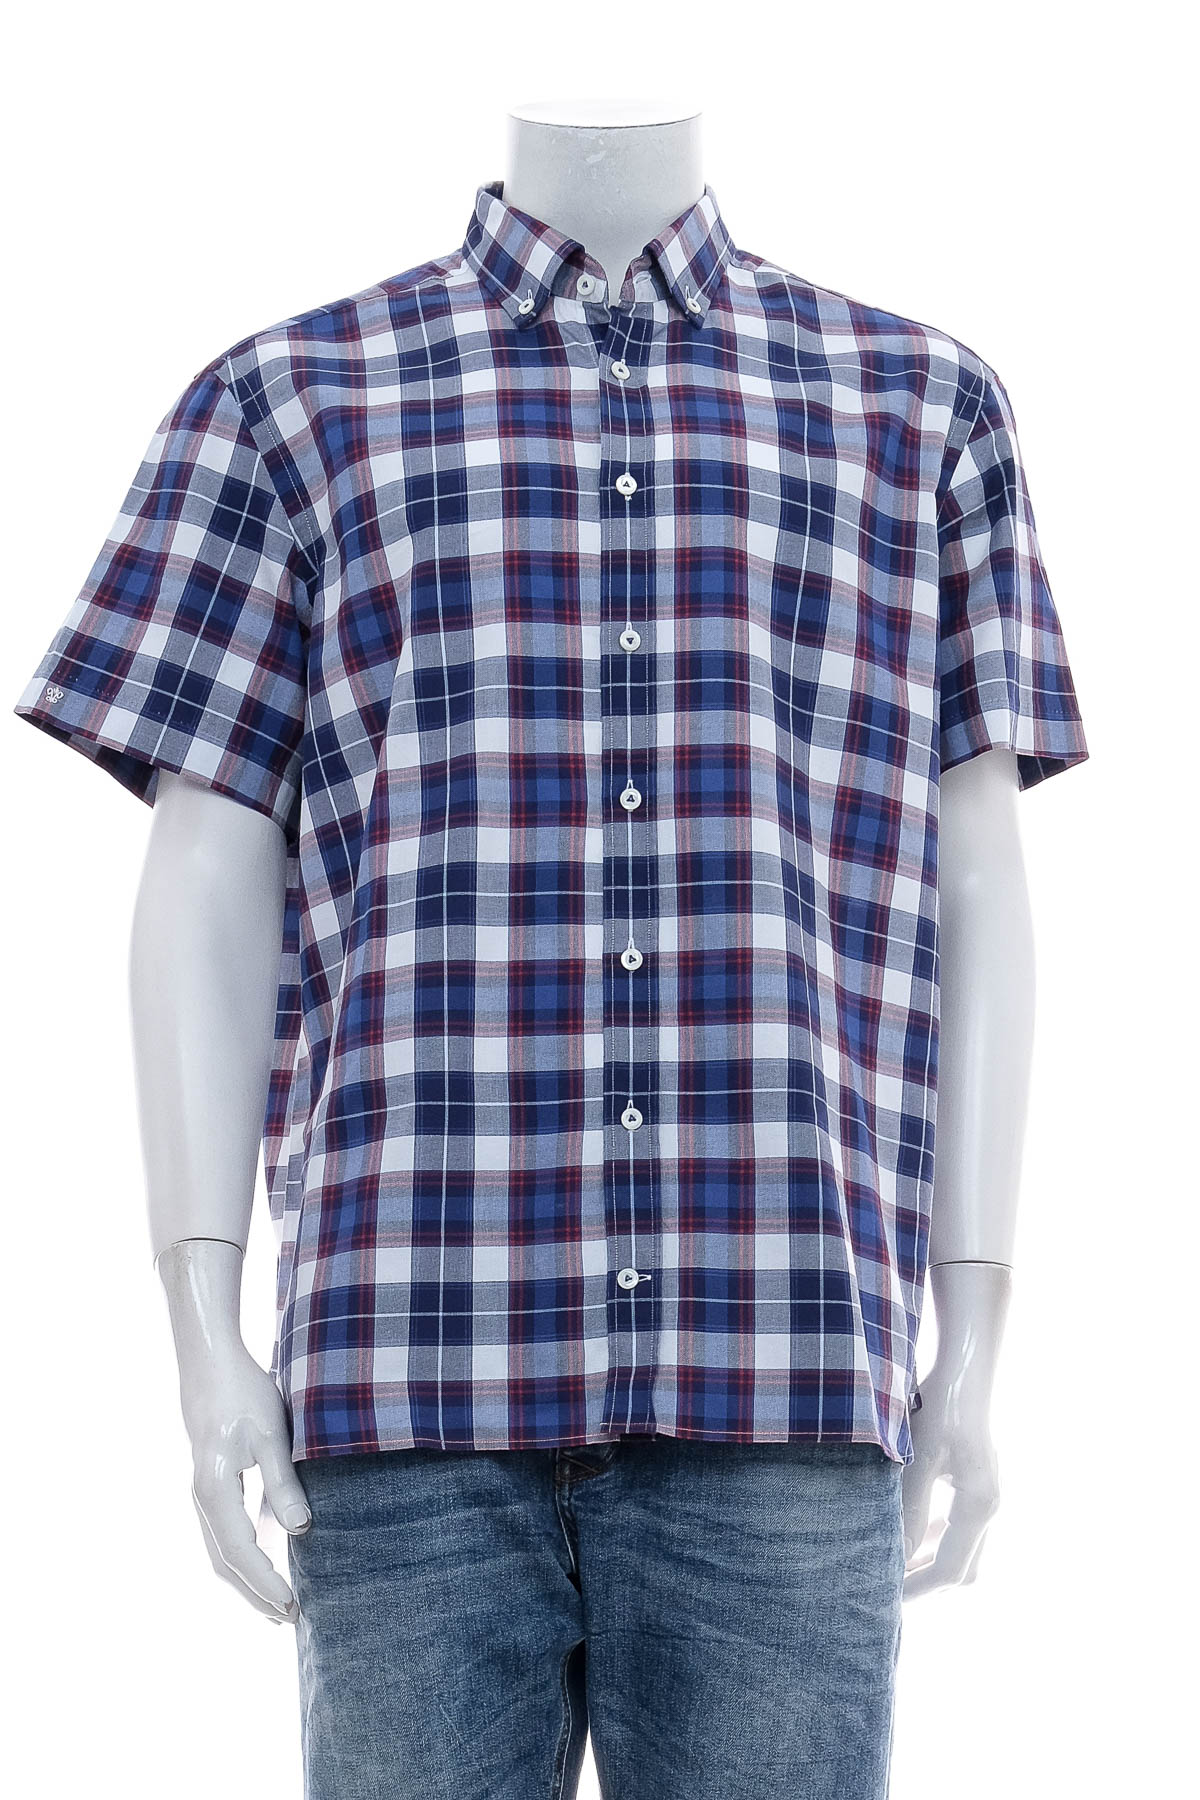 Ανδρικό πουκάμισο - Van Laack - 0